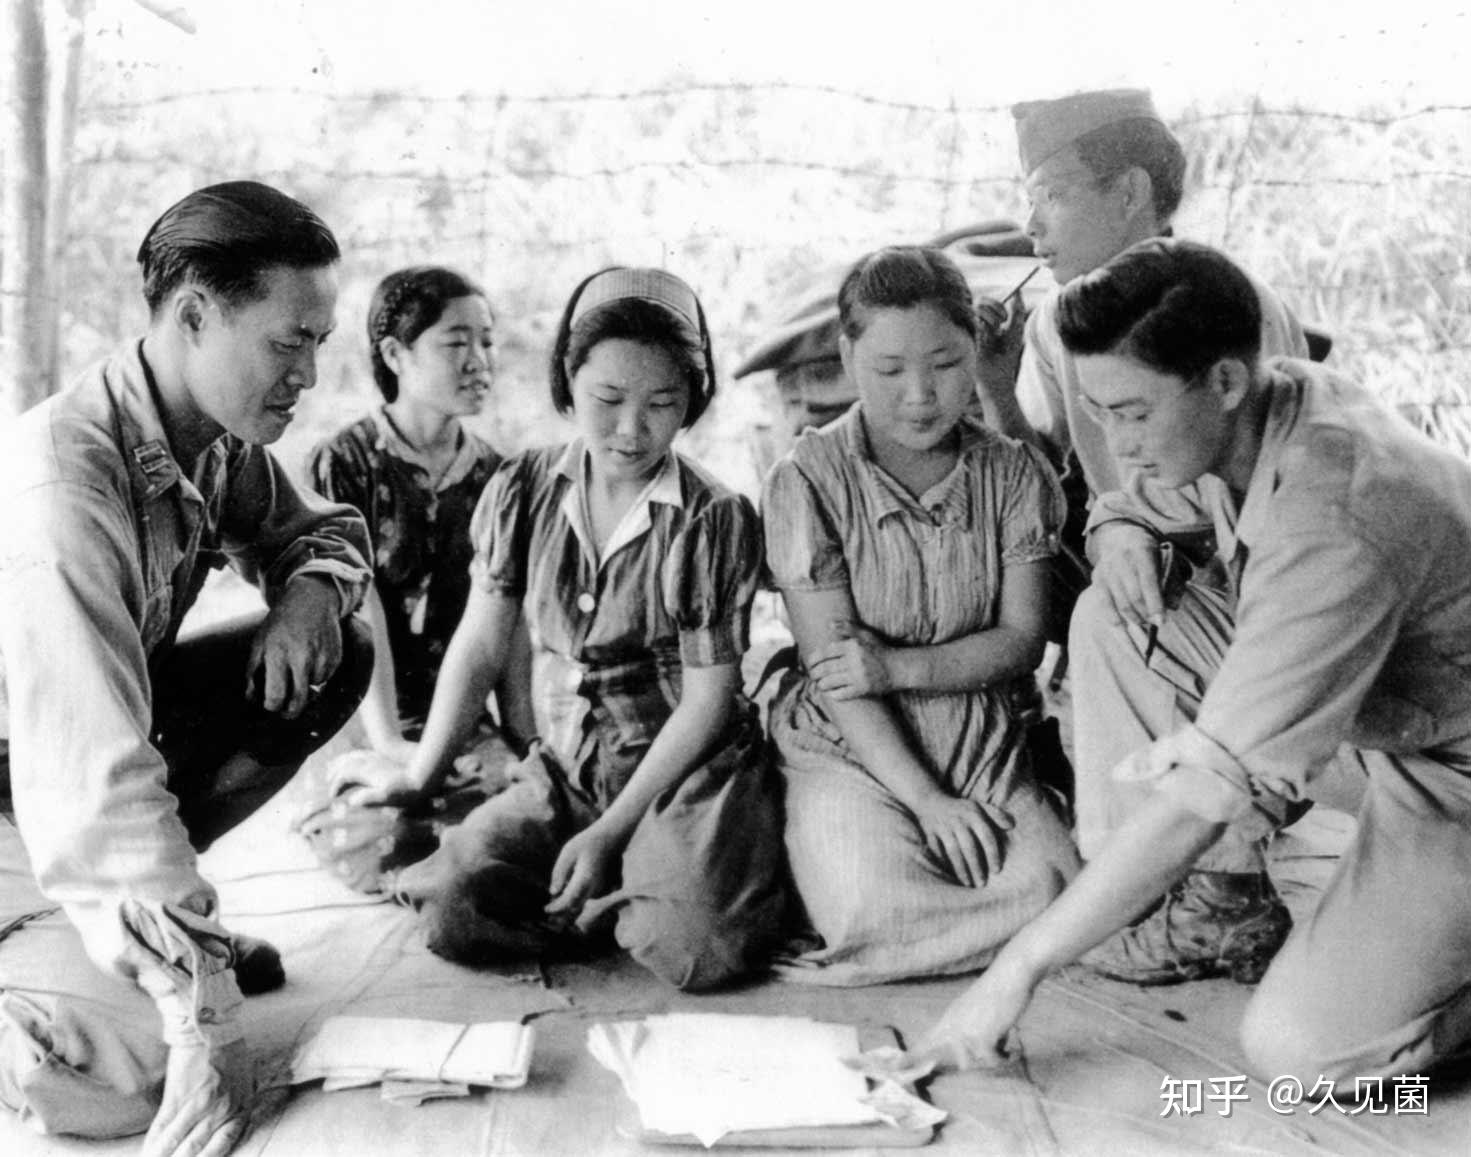 她们在等待道歉！新确认3位日军慰安妇制度受害幸存者